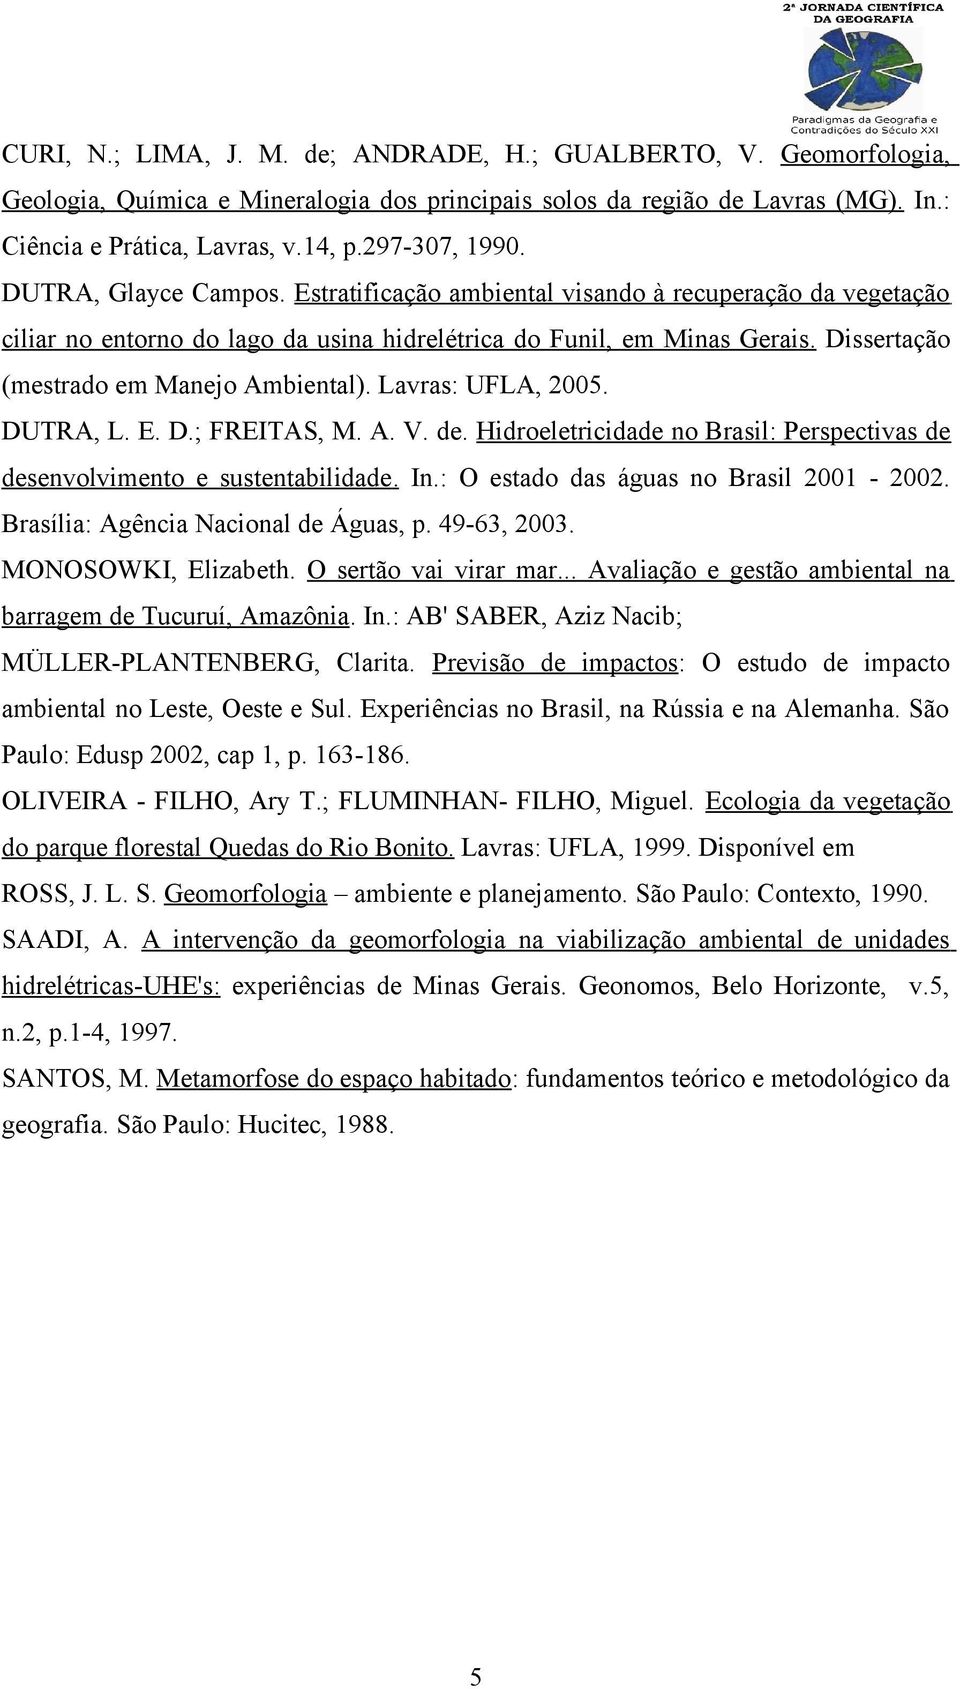 Dissertação (mestrado em Manejo Ambiental). Lavras: UFLA, 2005. DUTRA, L. E. D.; FREITAS, M. A. V. de. Hidroeletricidade no Brasil: Perspectivas de desenvolvimento e sustentabilidade. In.